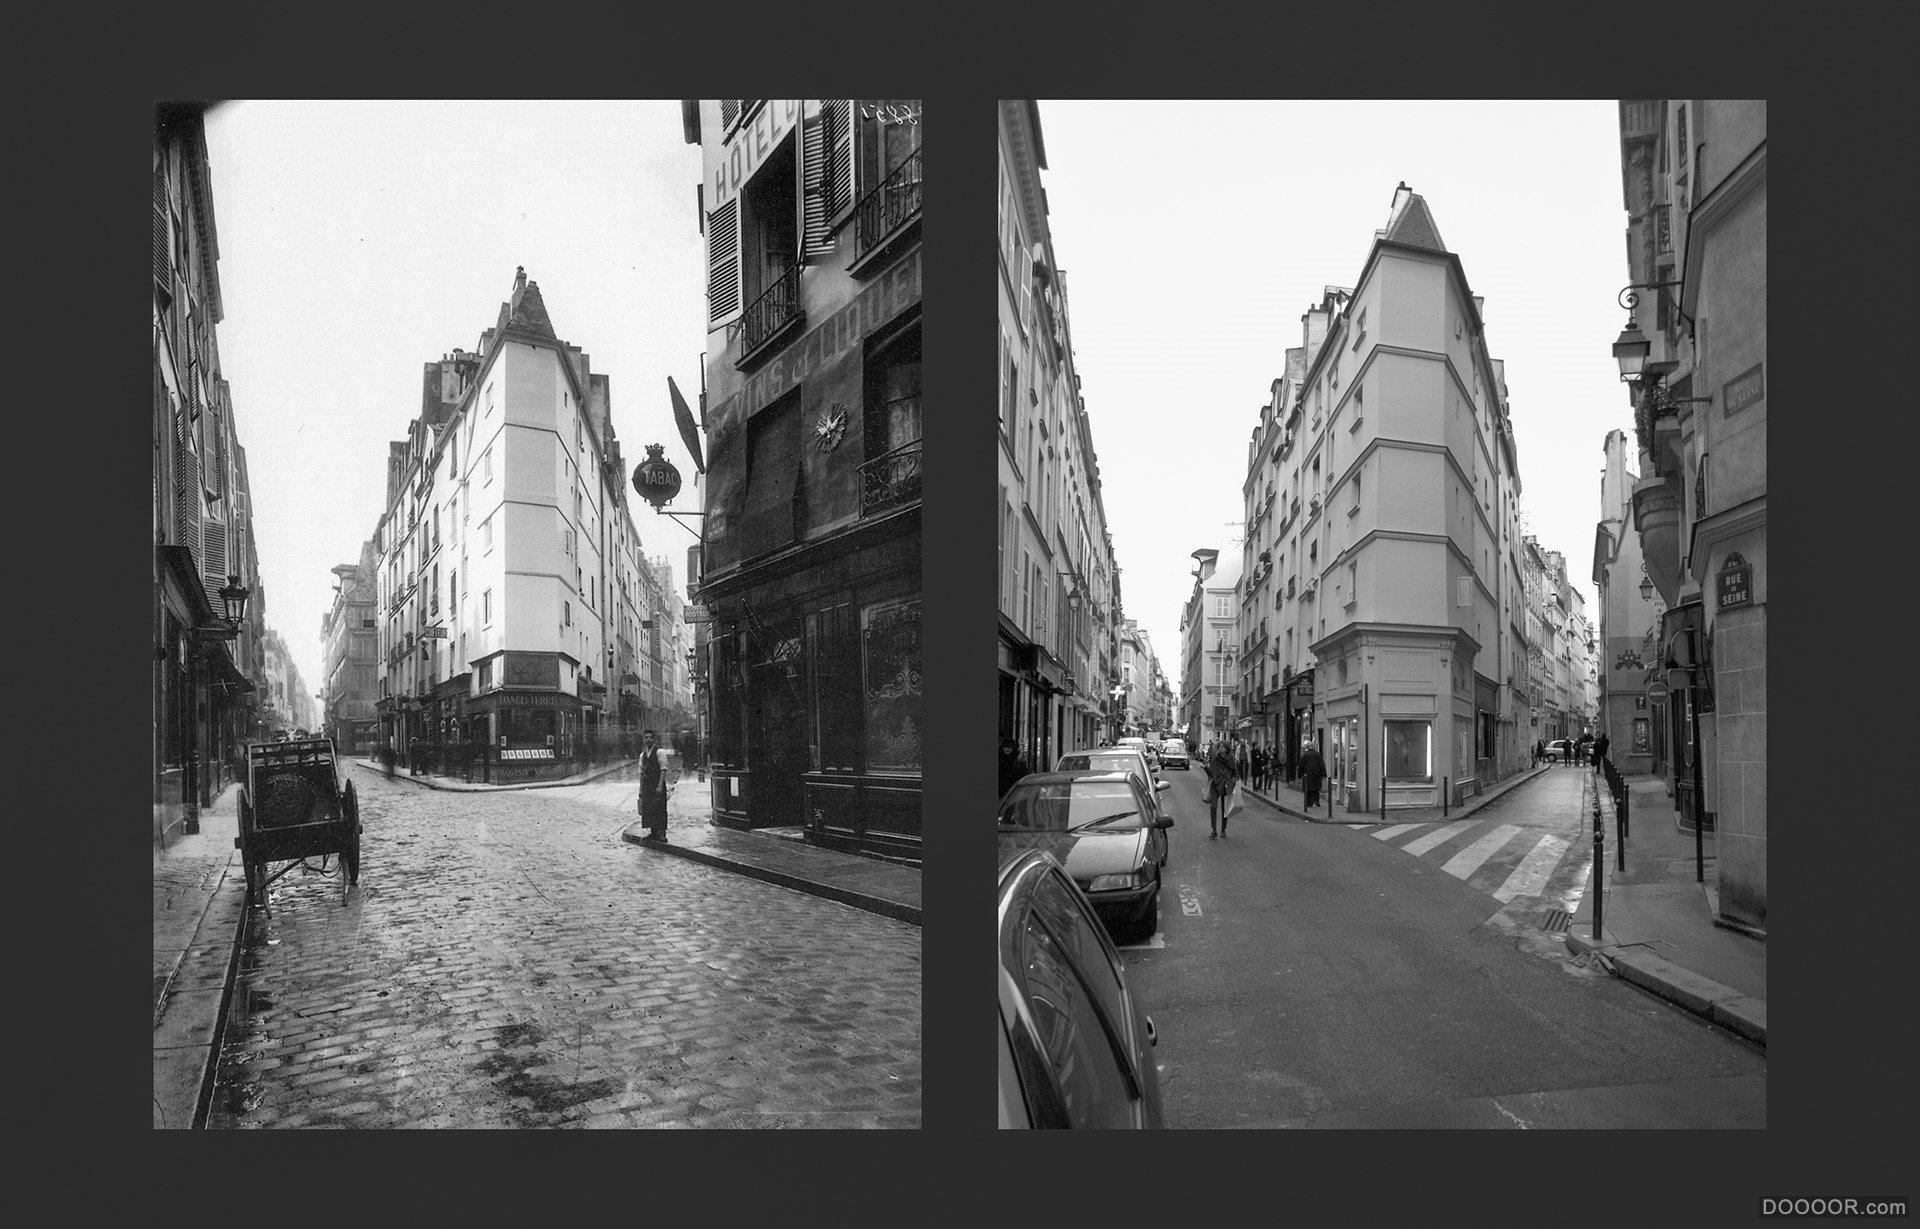 过去与现在-巴黎街头照片对比 [50P] (22).jpg